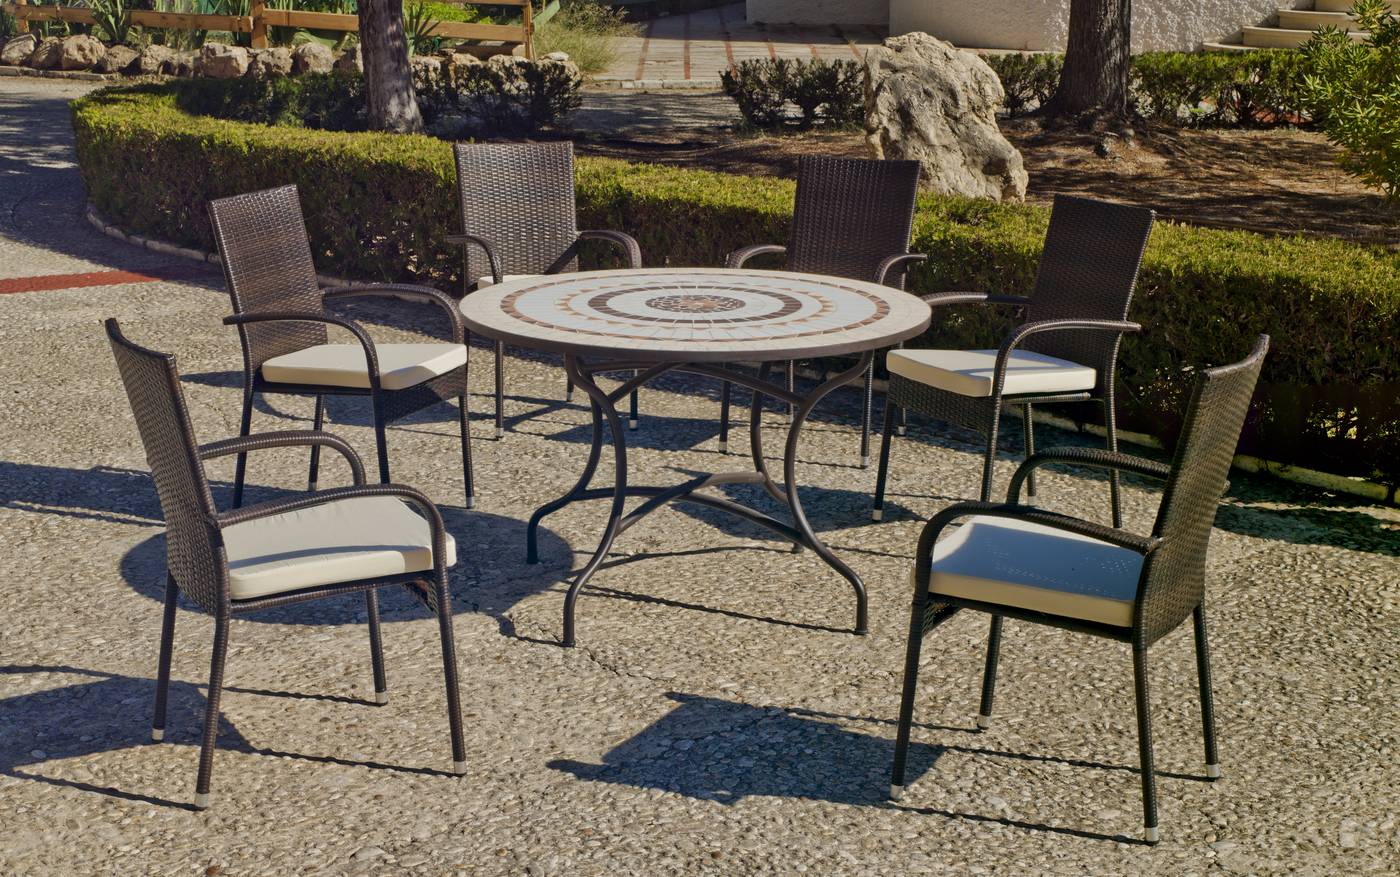 Conjunto para jardín y terraza de forja: 1 mesa redonda con panel de mosaico + 6 sillones de ratán sintético + 6 cojines